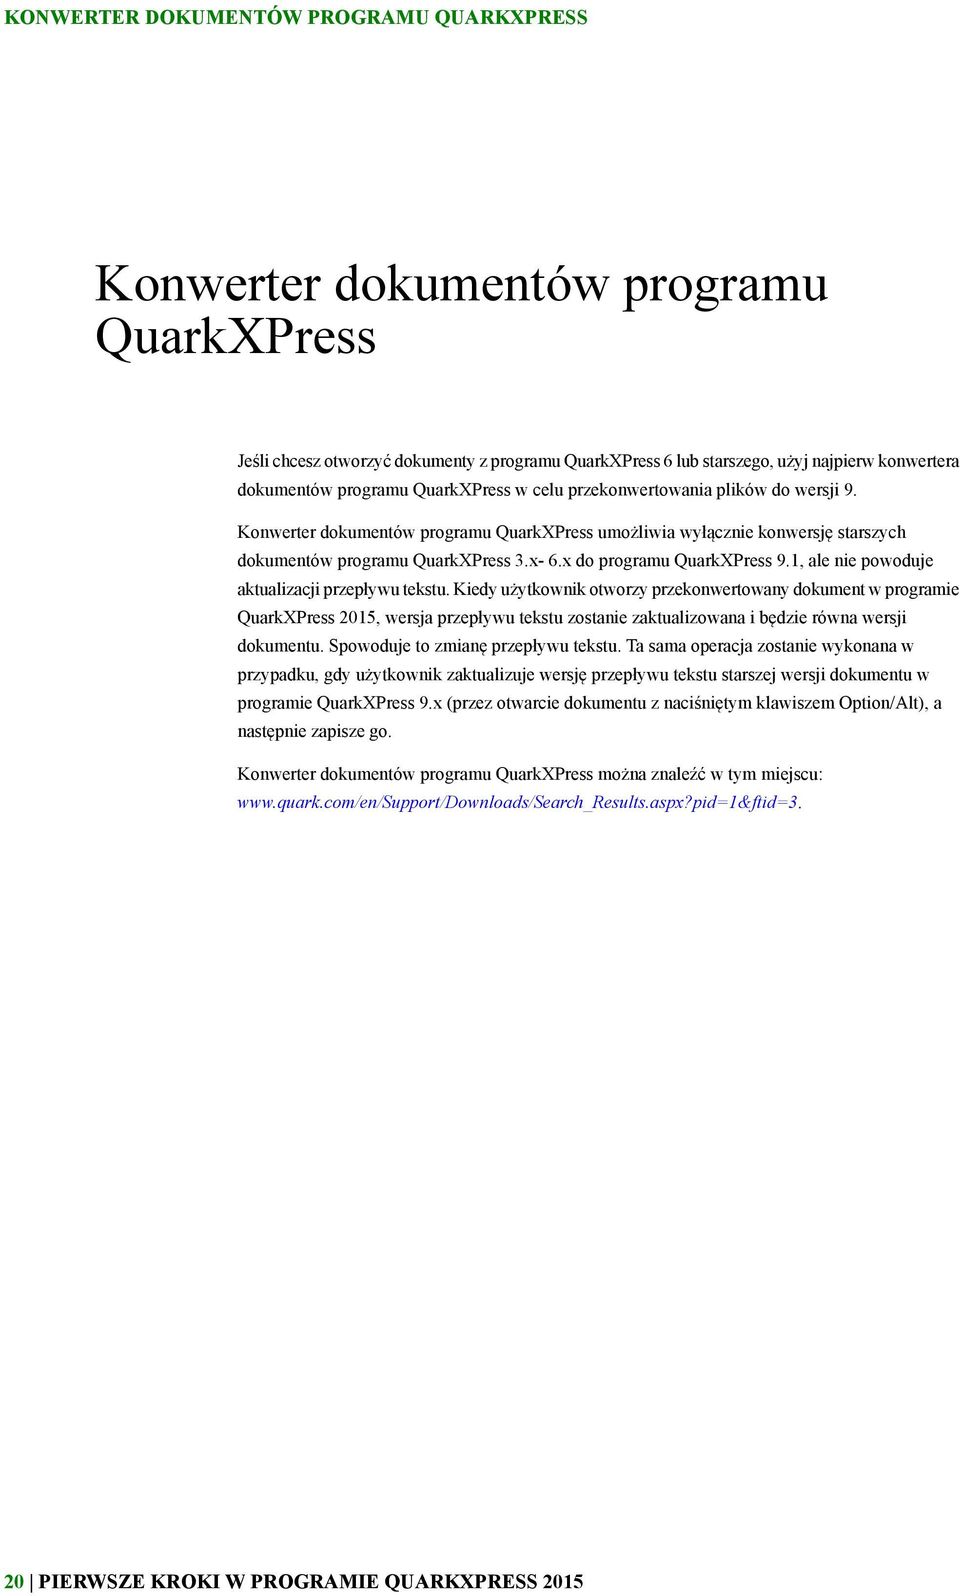 x do programu QuarkXPress 9.1, ale nie powoduje aktualizacji przepływu tekstu.